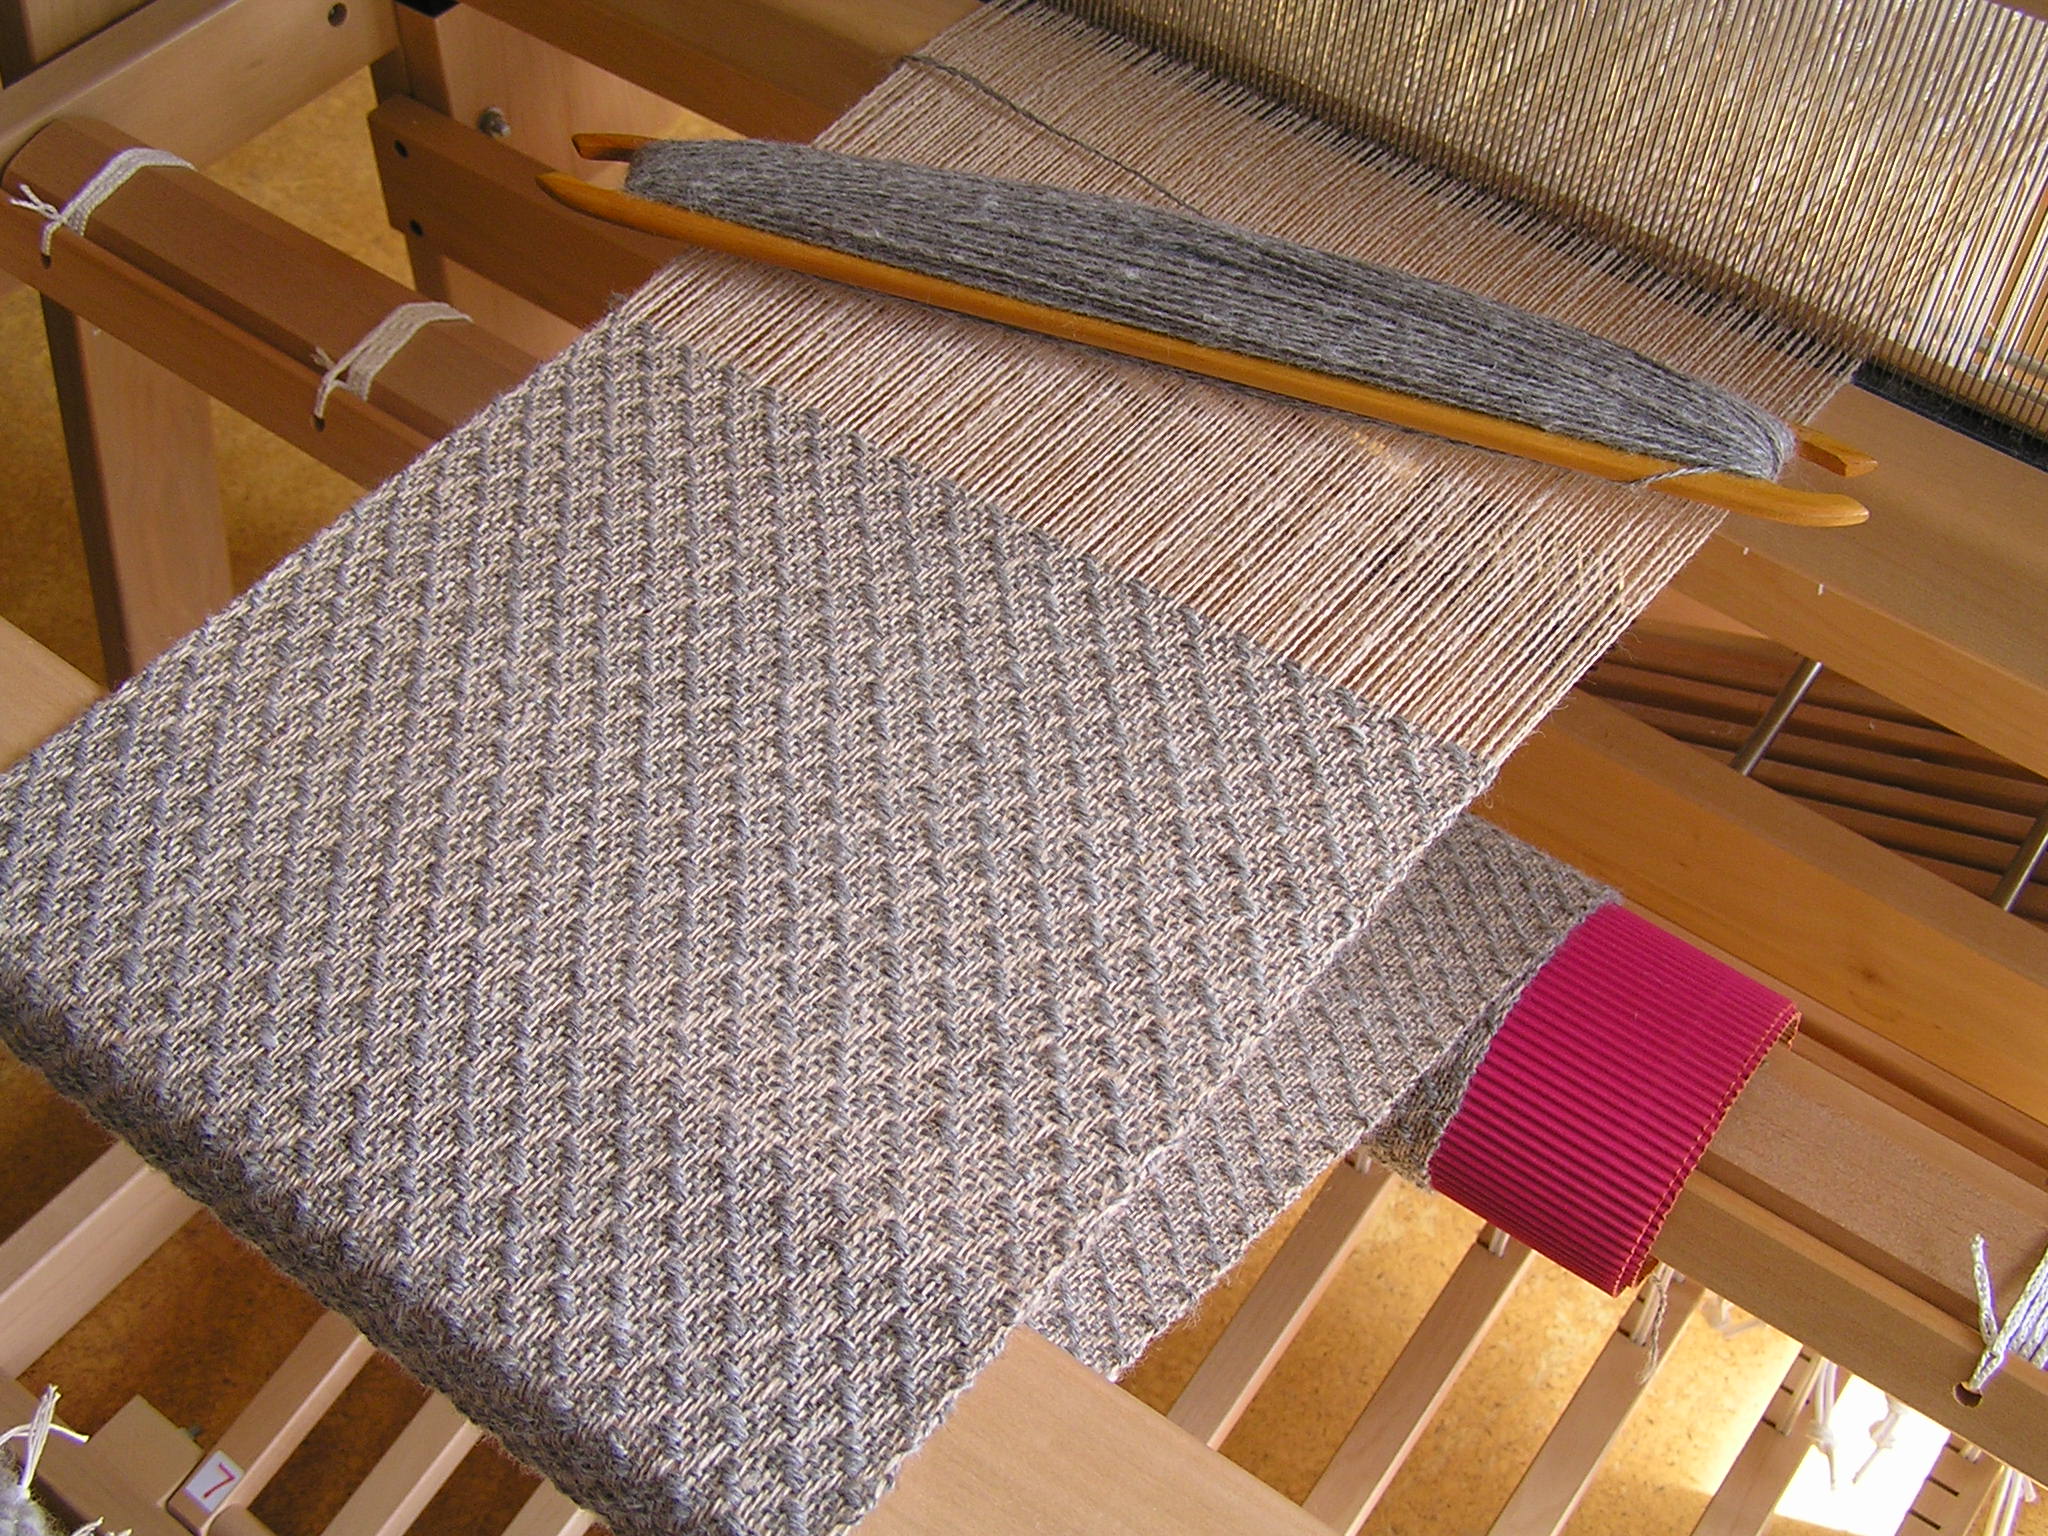 Work in progress on Ashford Jack loom